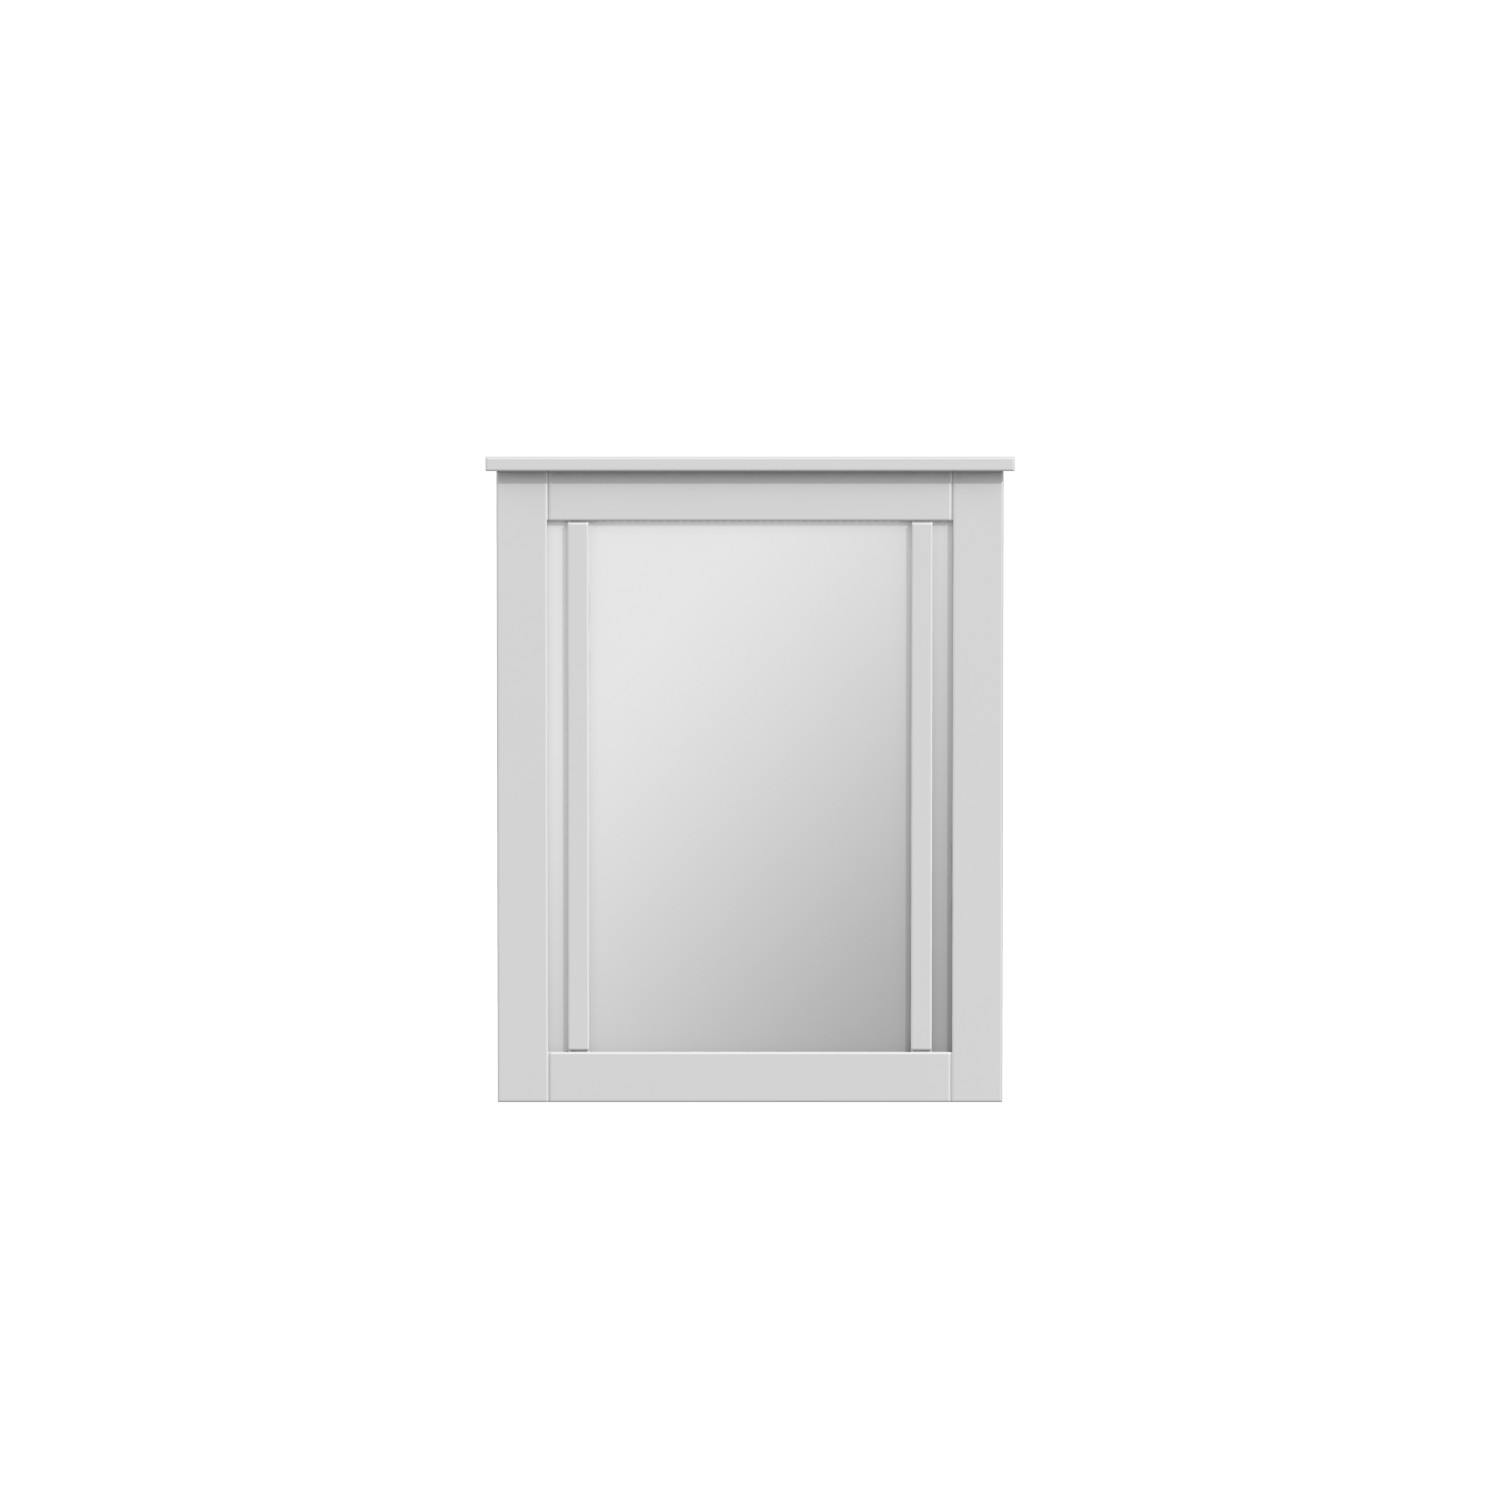 25"W x 31"H Craven Mirror Matte White